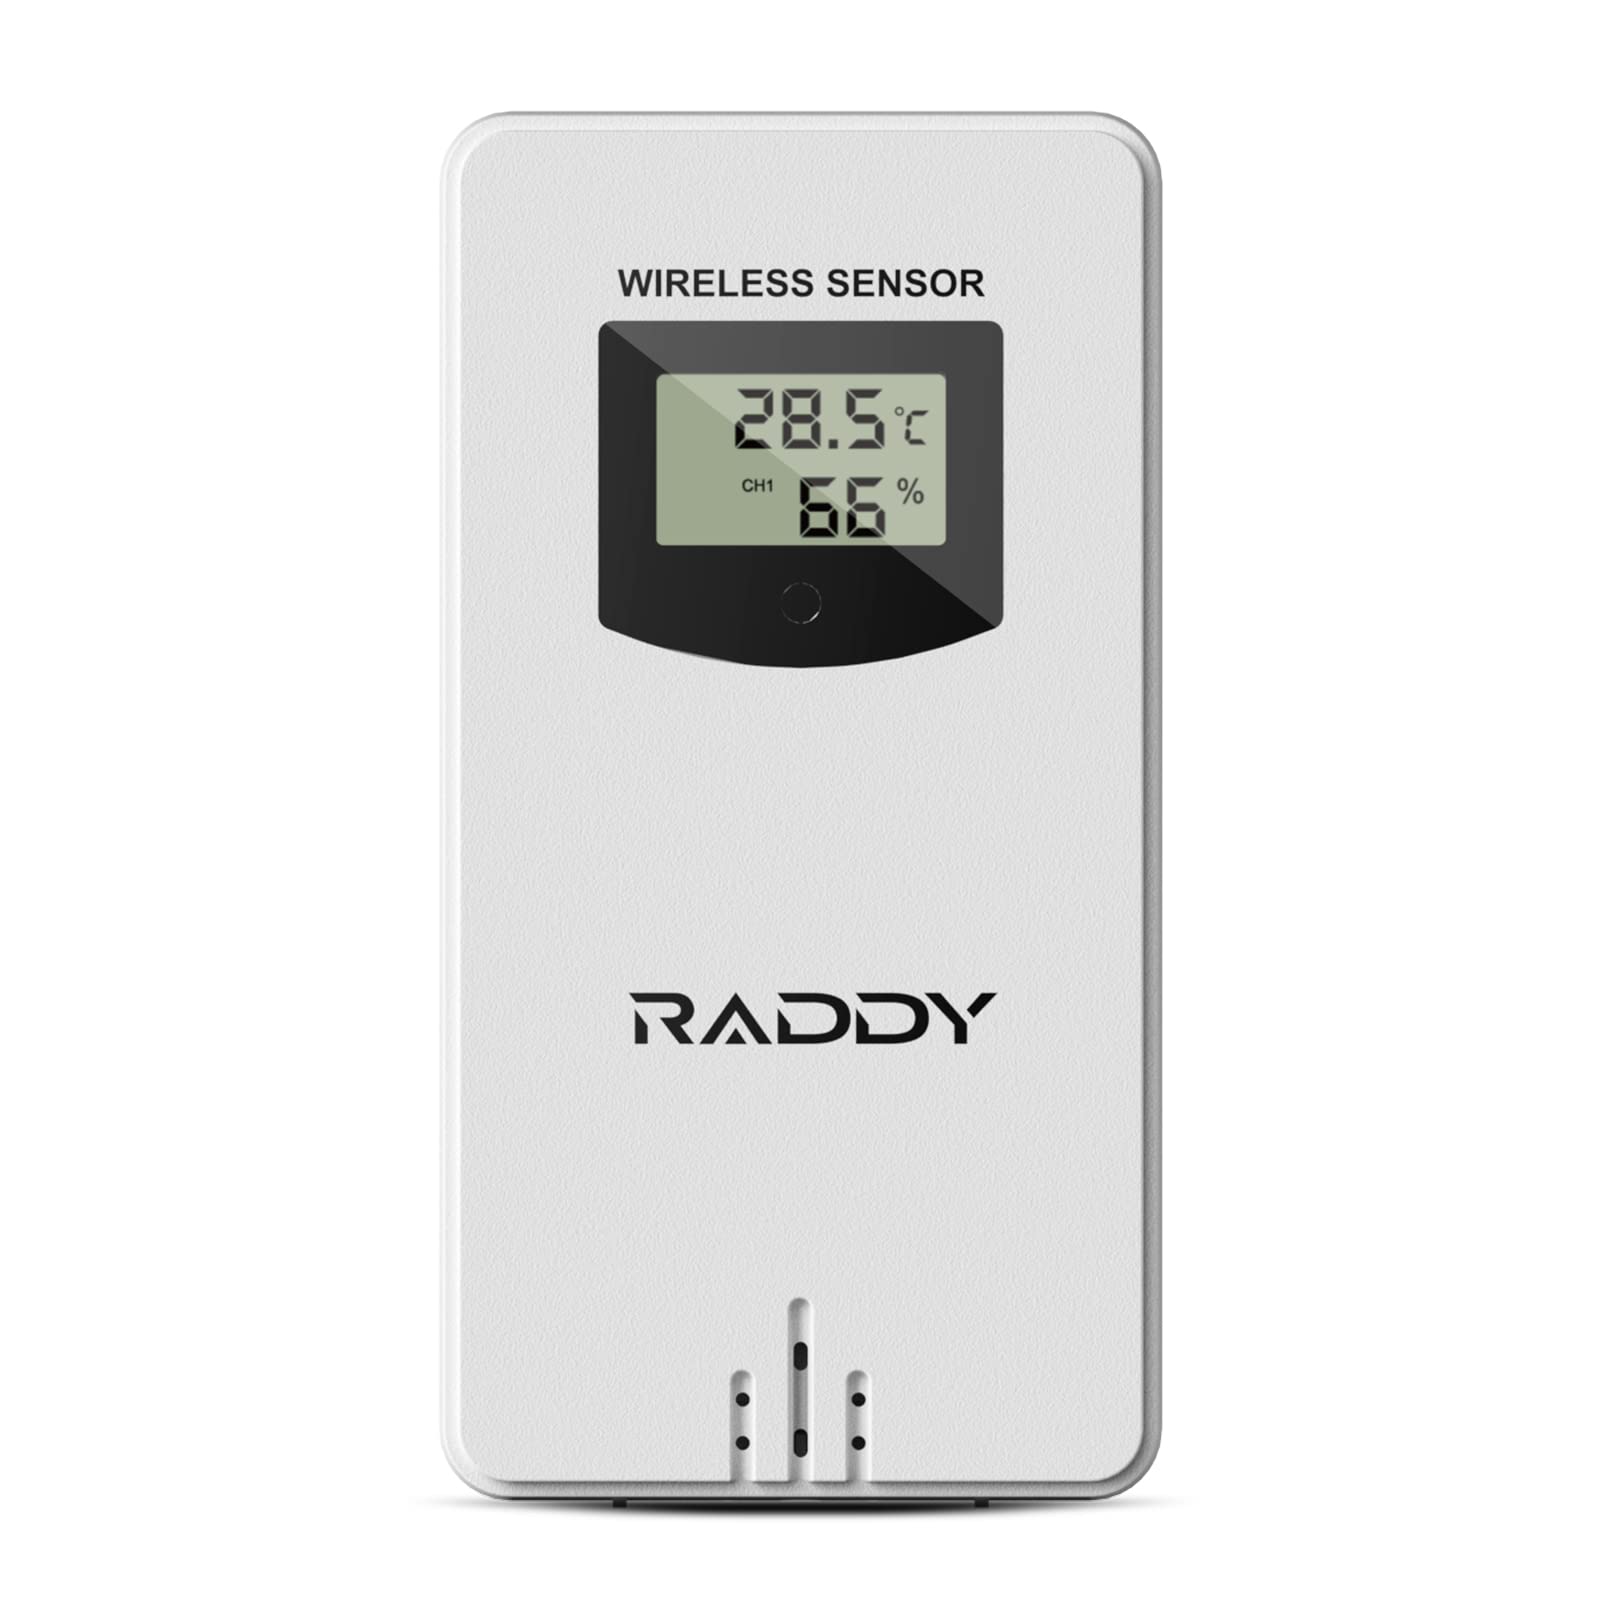 escompte élevé Raddy R3 Capteur de télécommande sans fil pour station météo domestique WF-55C PRO DT6 WM6 LuklCTTE6 en ligne